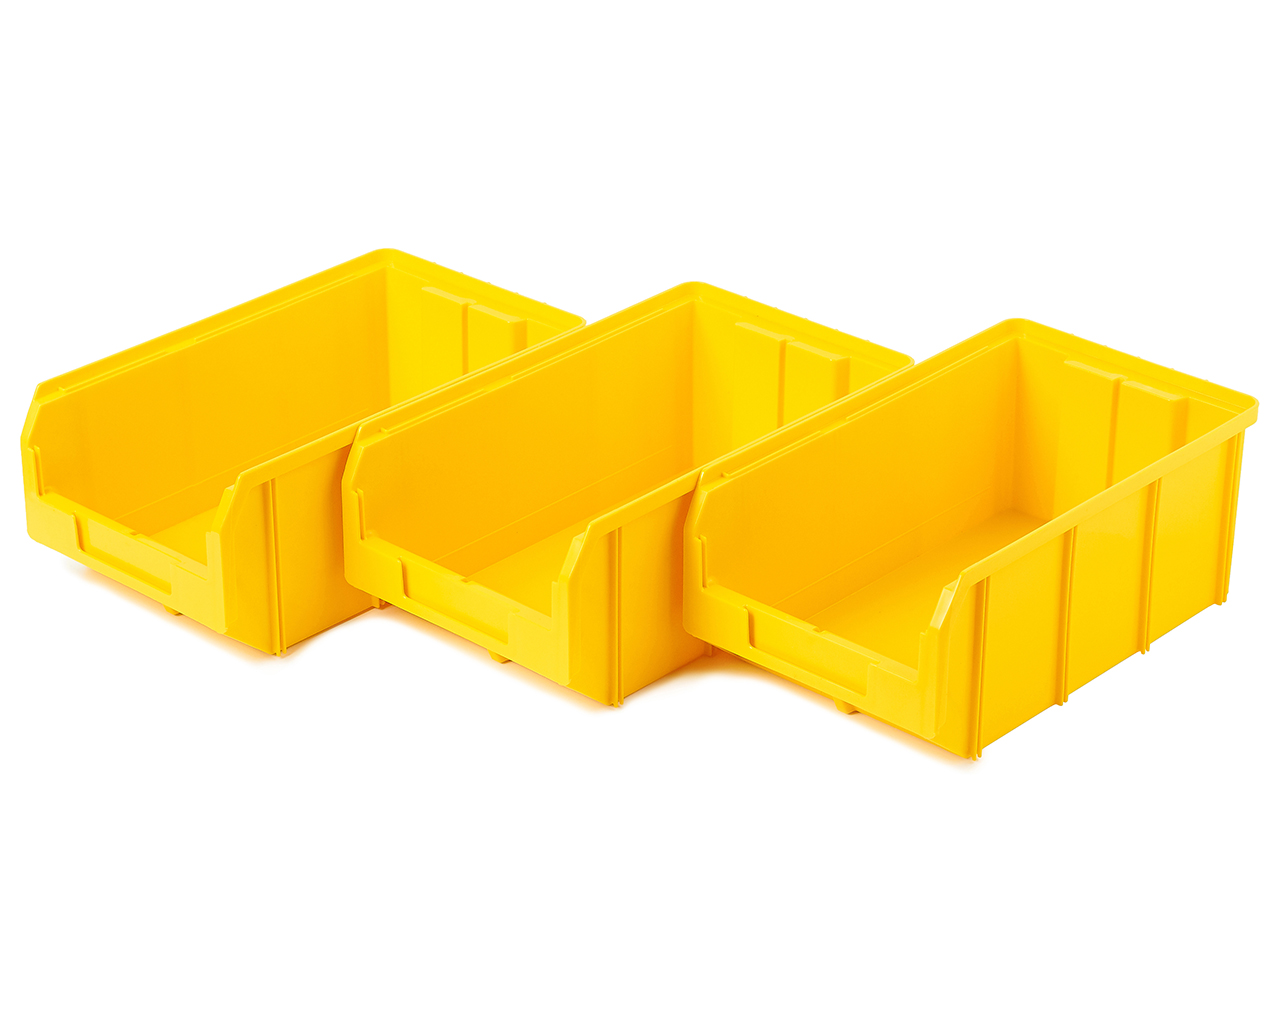 Пластиковый ящик Стелла-техник V-3-К3-желтый , 342х207х143мм, комплект 3 штуки комплект колес промышленных неповоротных стелла техник n48075tprf k2 75мм 70кг